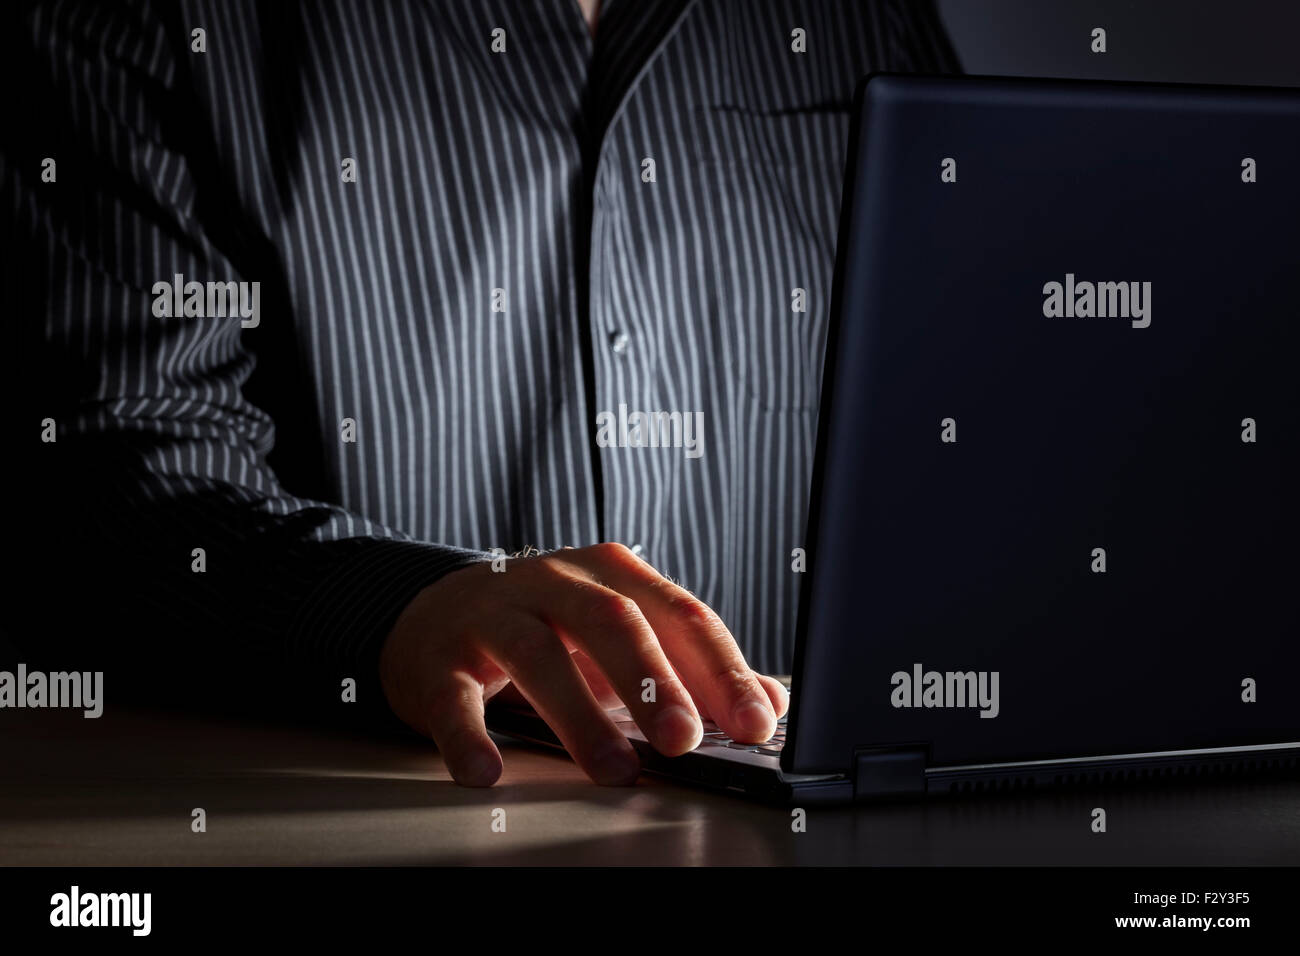 Spät in der Nacht Internet sucht oder arbeiten spät Mann mit Laptop an einem Schreibtisch in der Dunkelheit Stockfoto